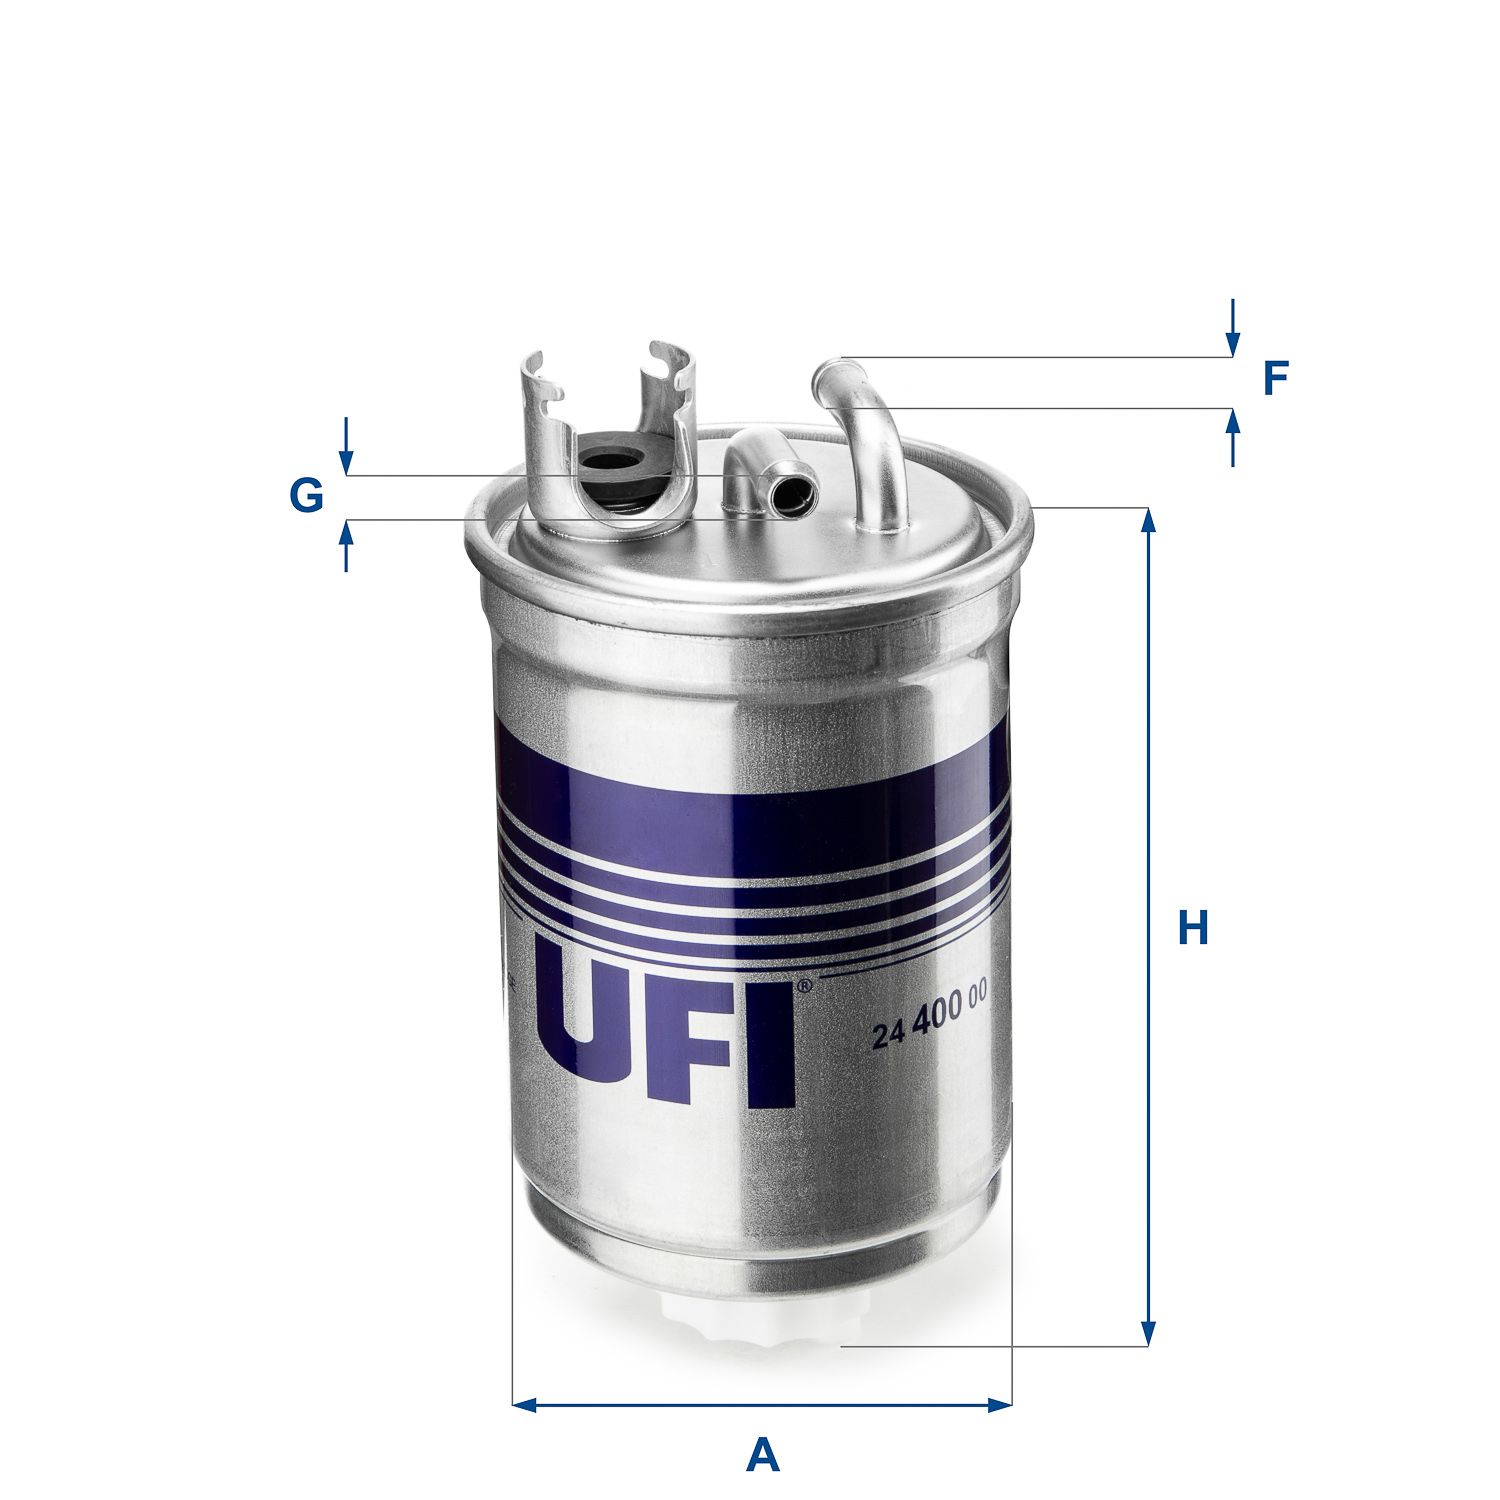 Palivový filtr UFI 24.400.00